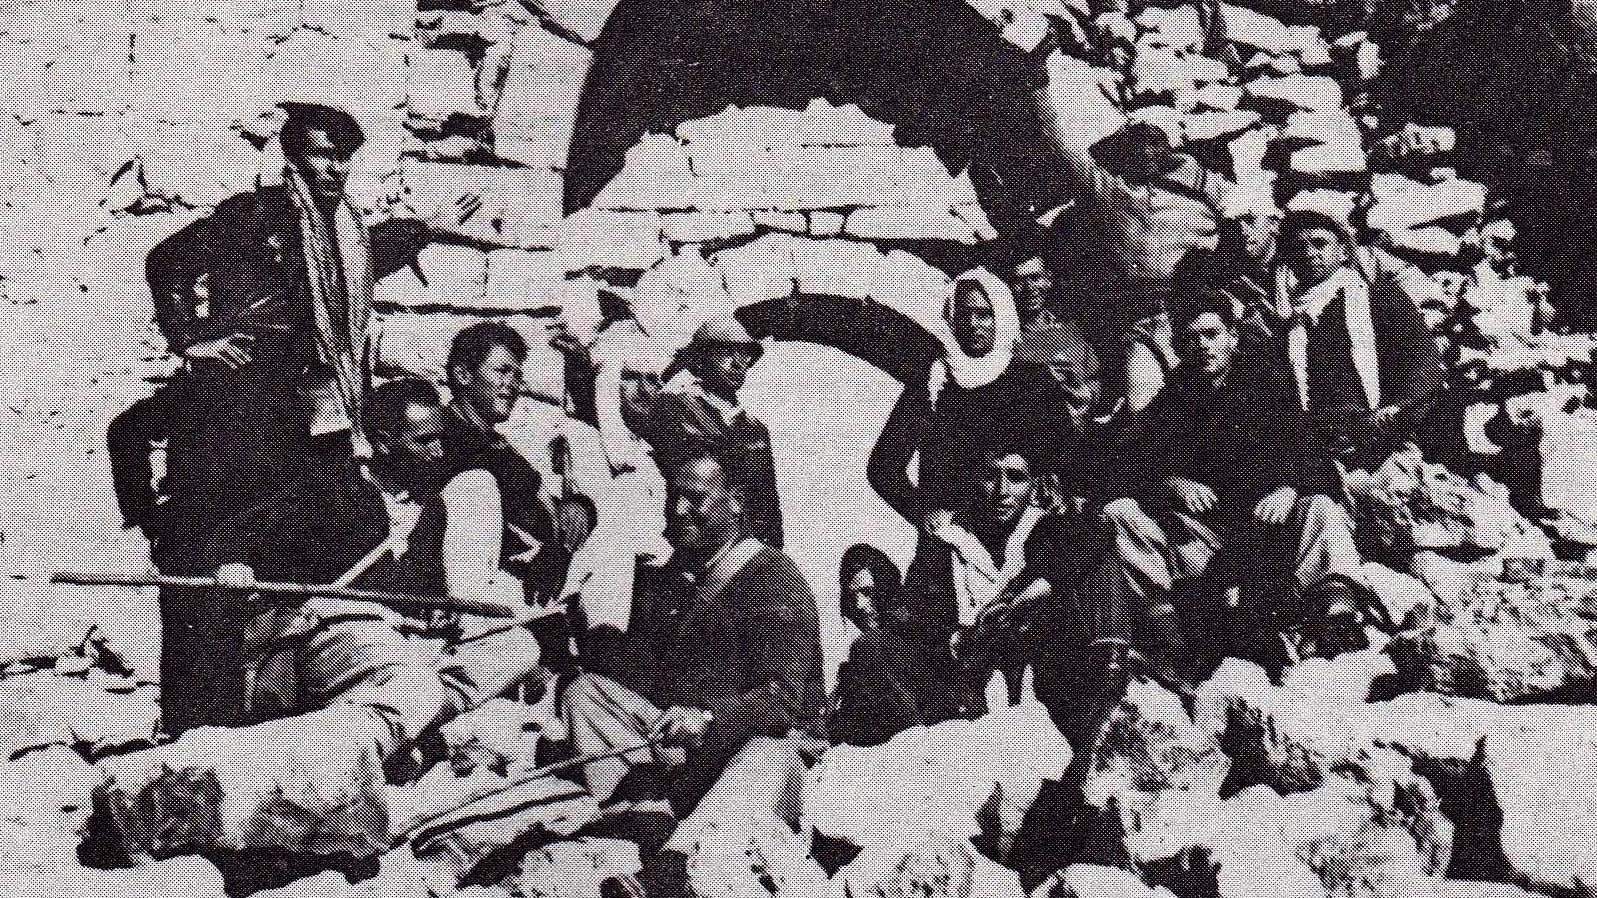 החבורה נחה בחורבות עבדת (צילום: מוטקה זיו מקיבוץ קדמה)